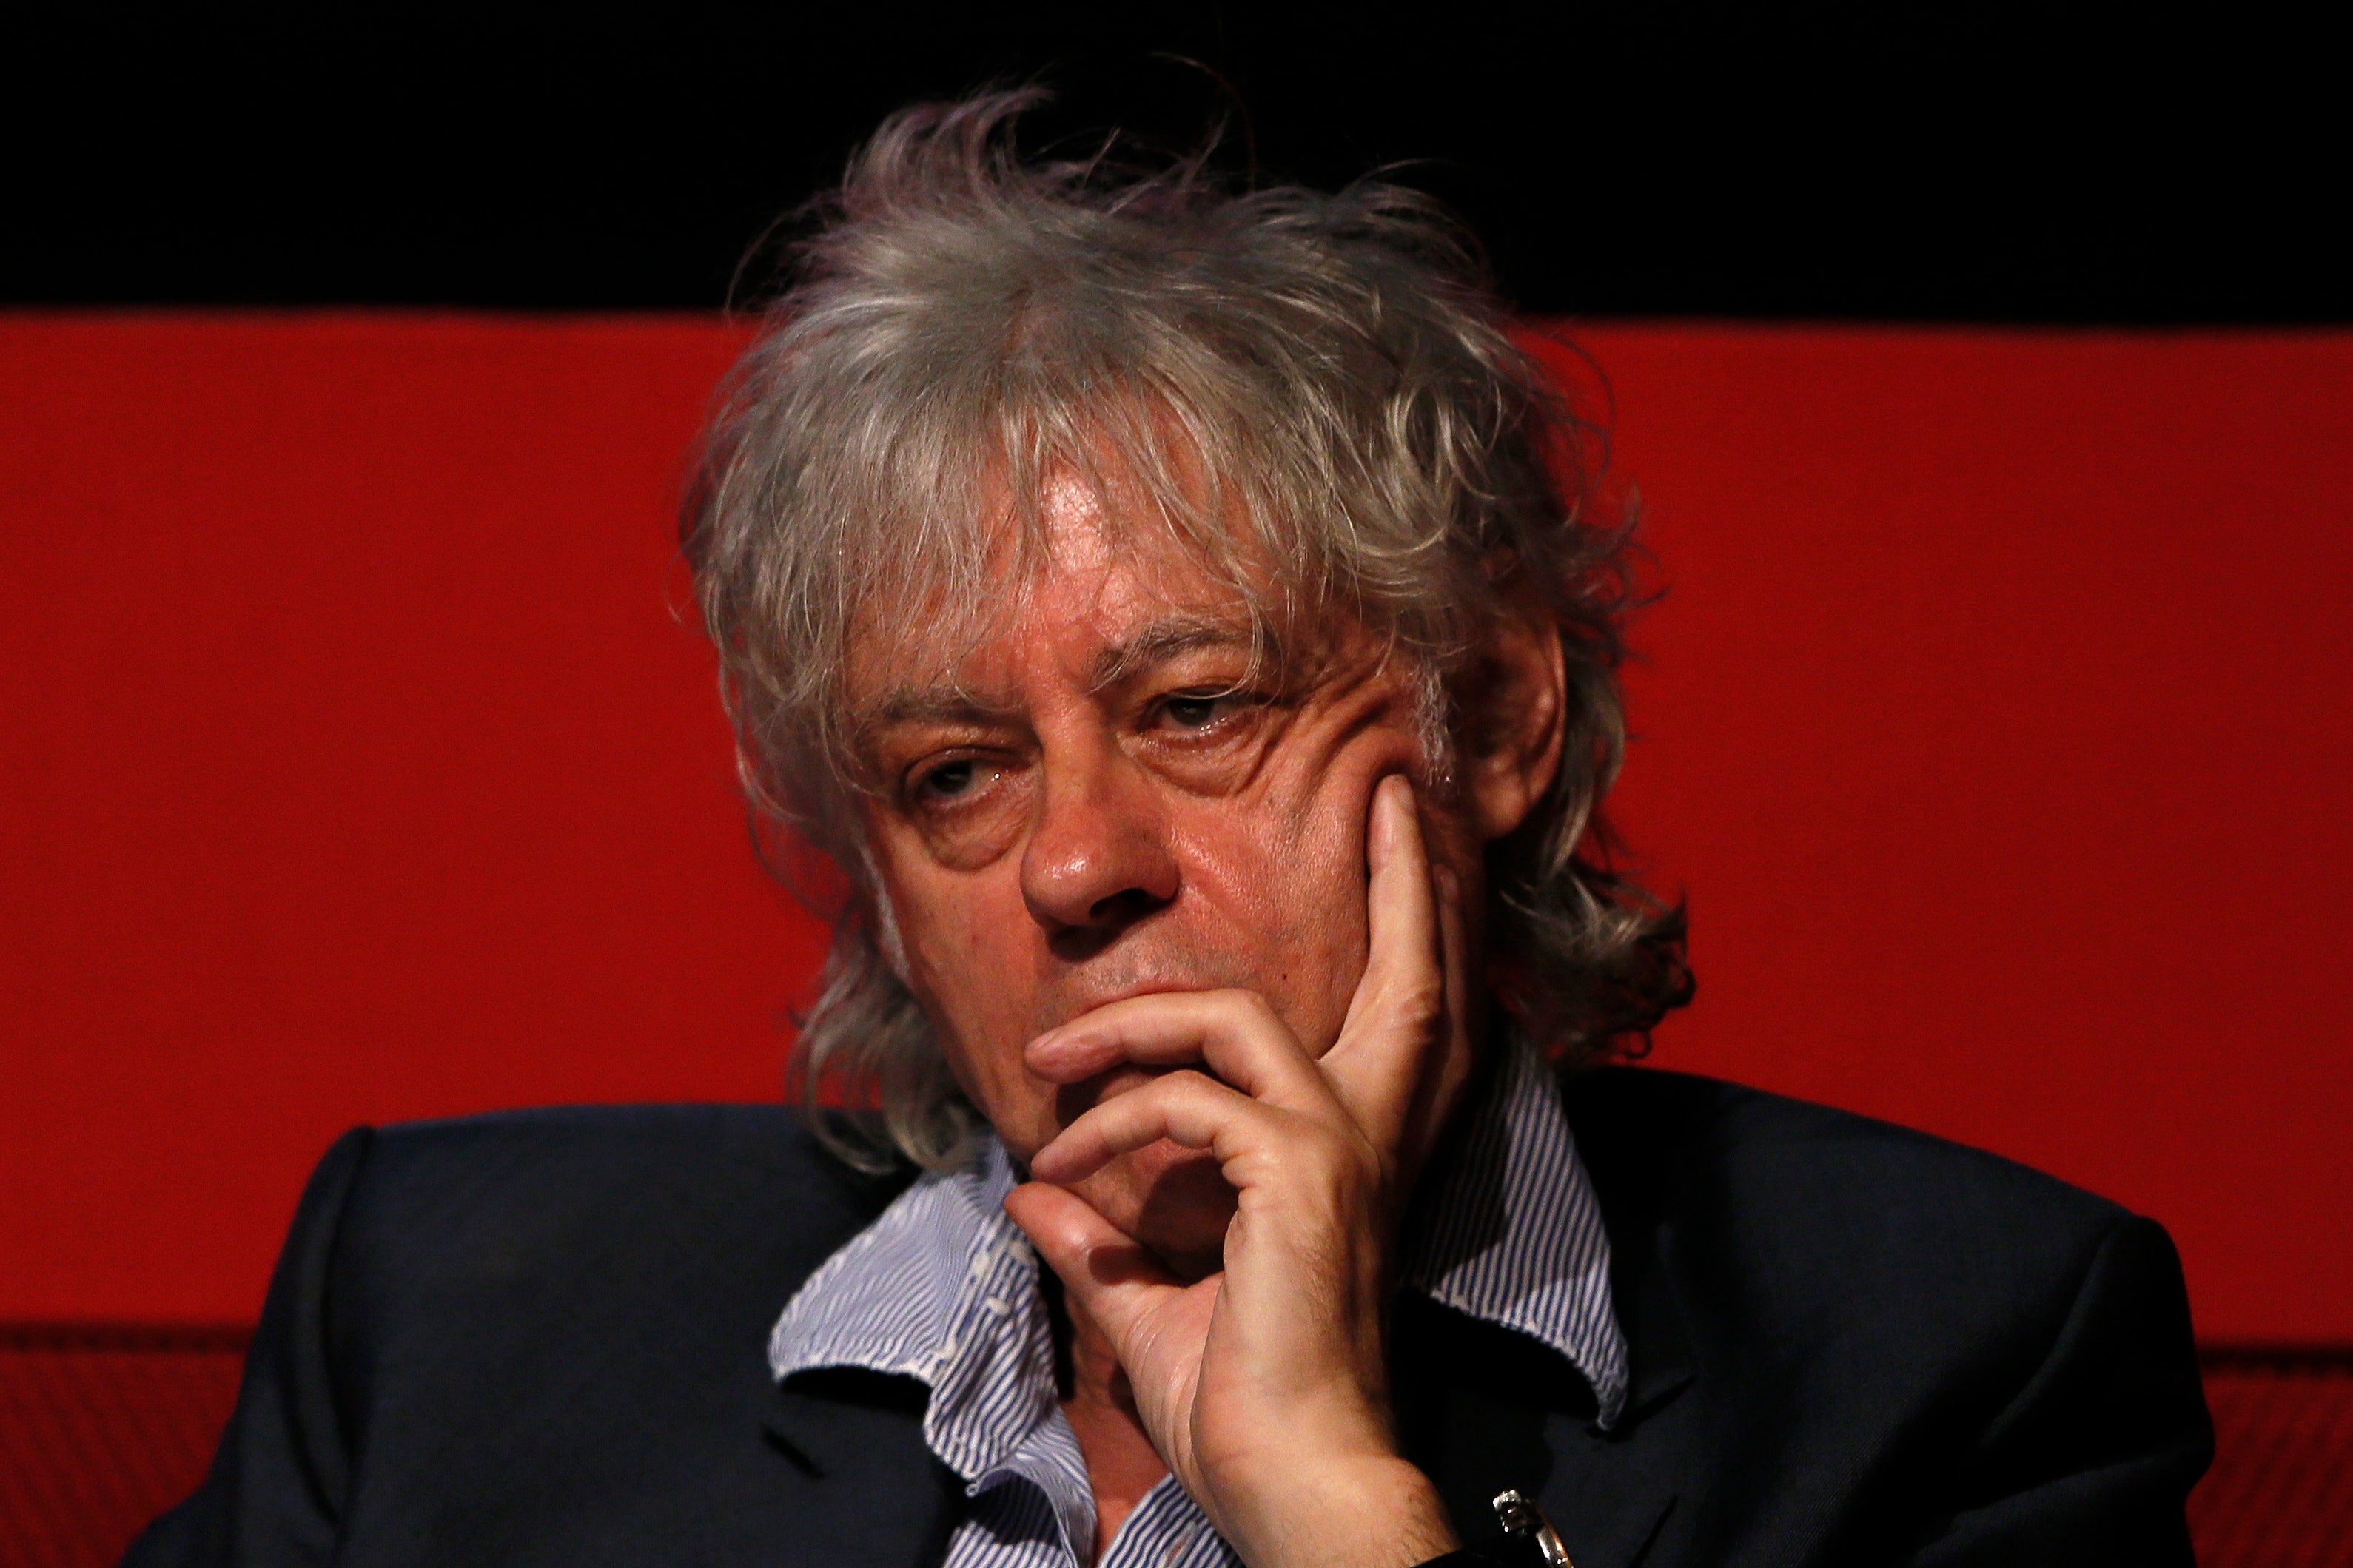 Bob Geldof's Daughter Peaches, British Journalist, Dies at 25